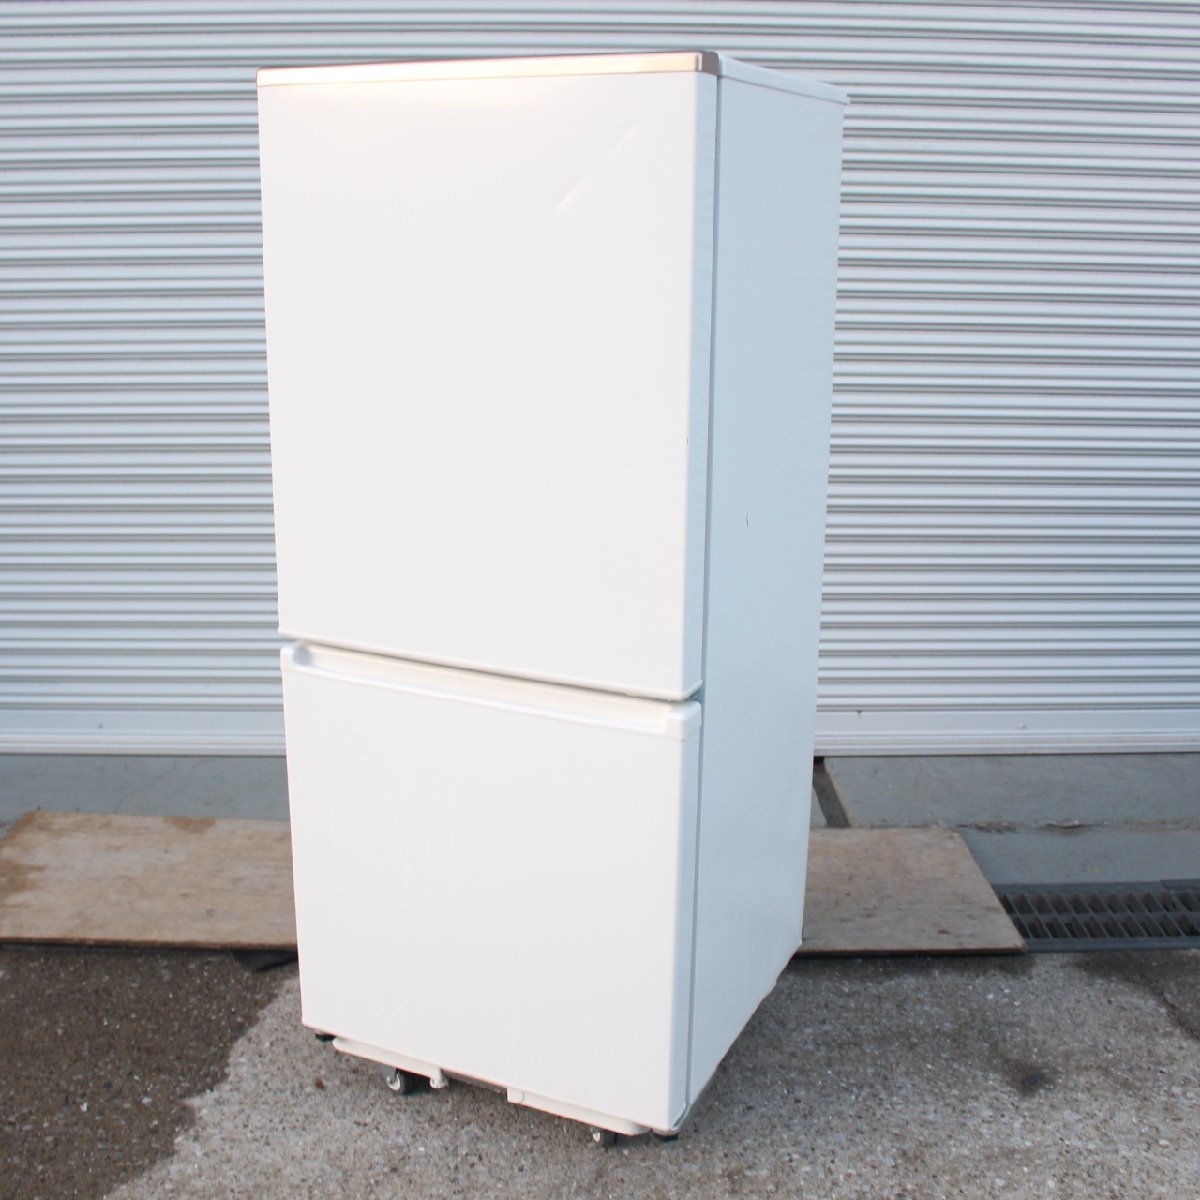 東京都調布市にて アクア 冷凍冷蔵庫 AQR-17MBK 2021年製 を出張買取させて頂きました。